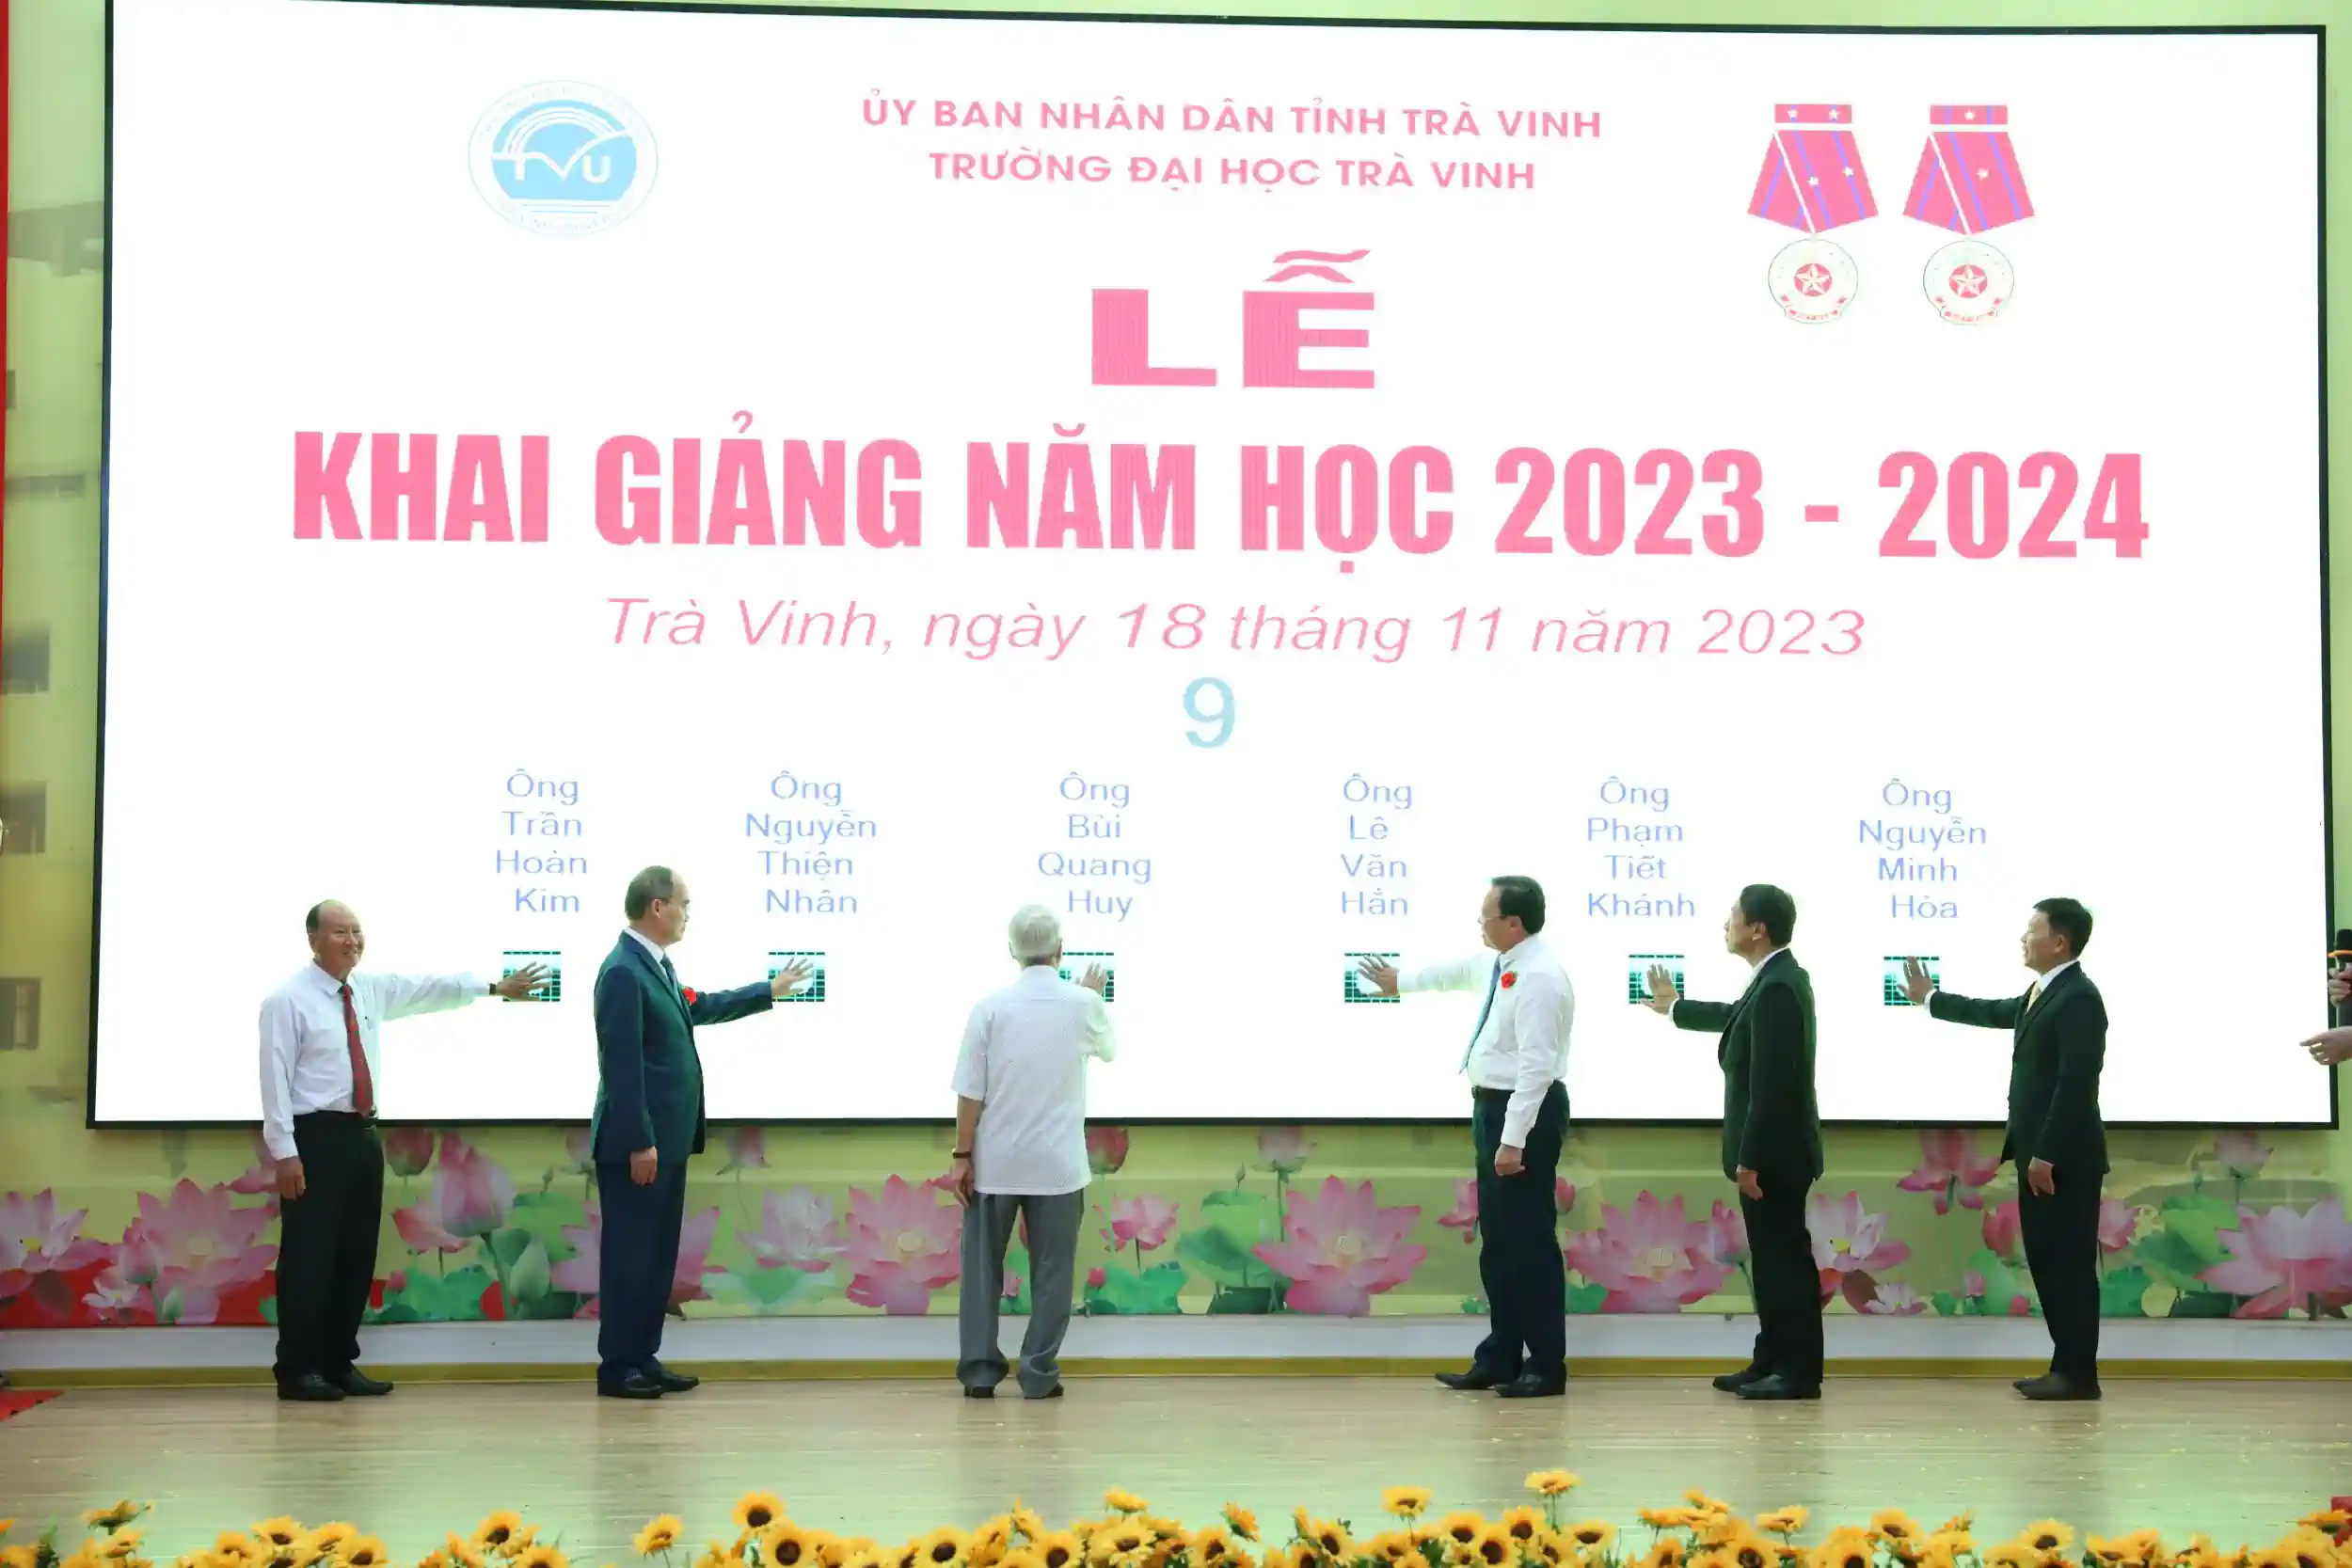 Trường ĐH Trà Vinh phát lệnh khai giảng năm học 2023-2024.